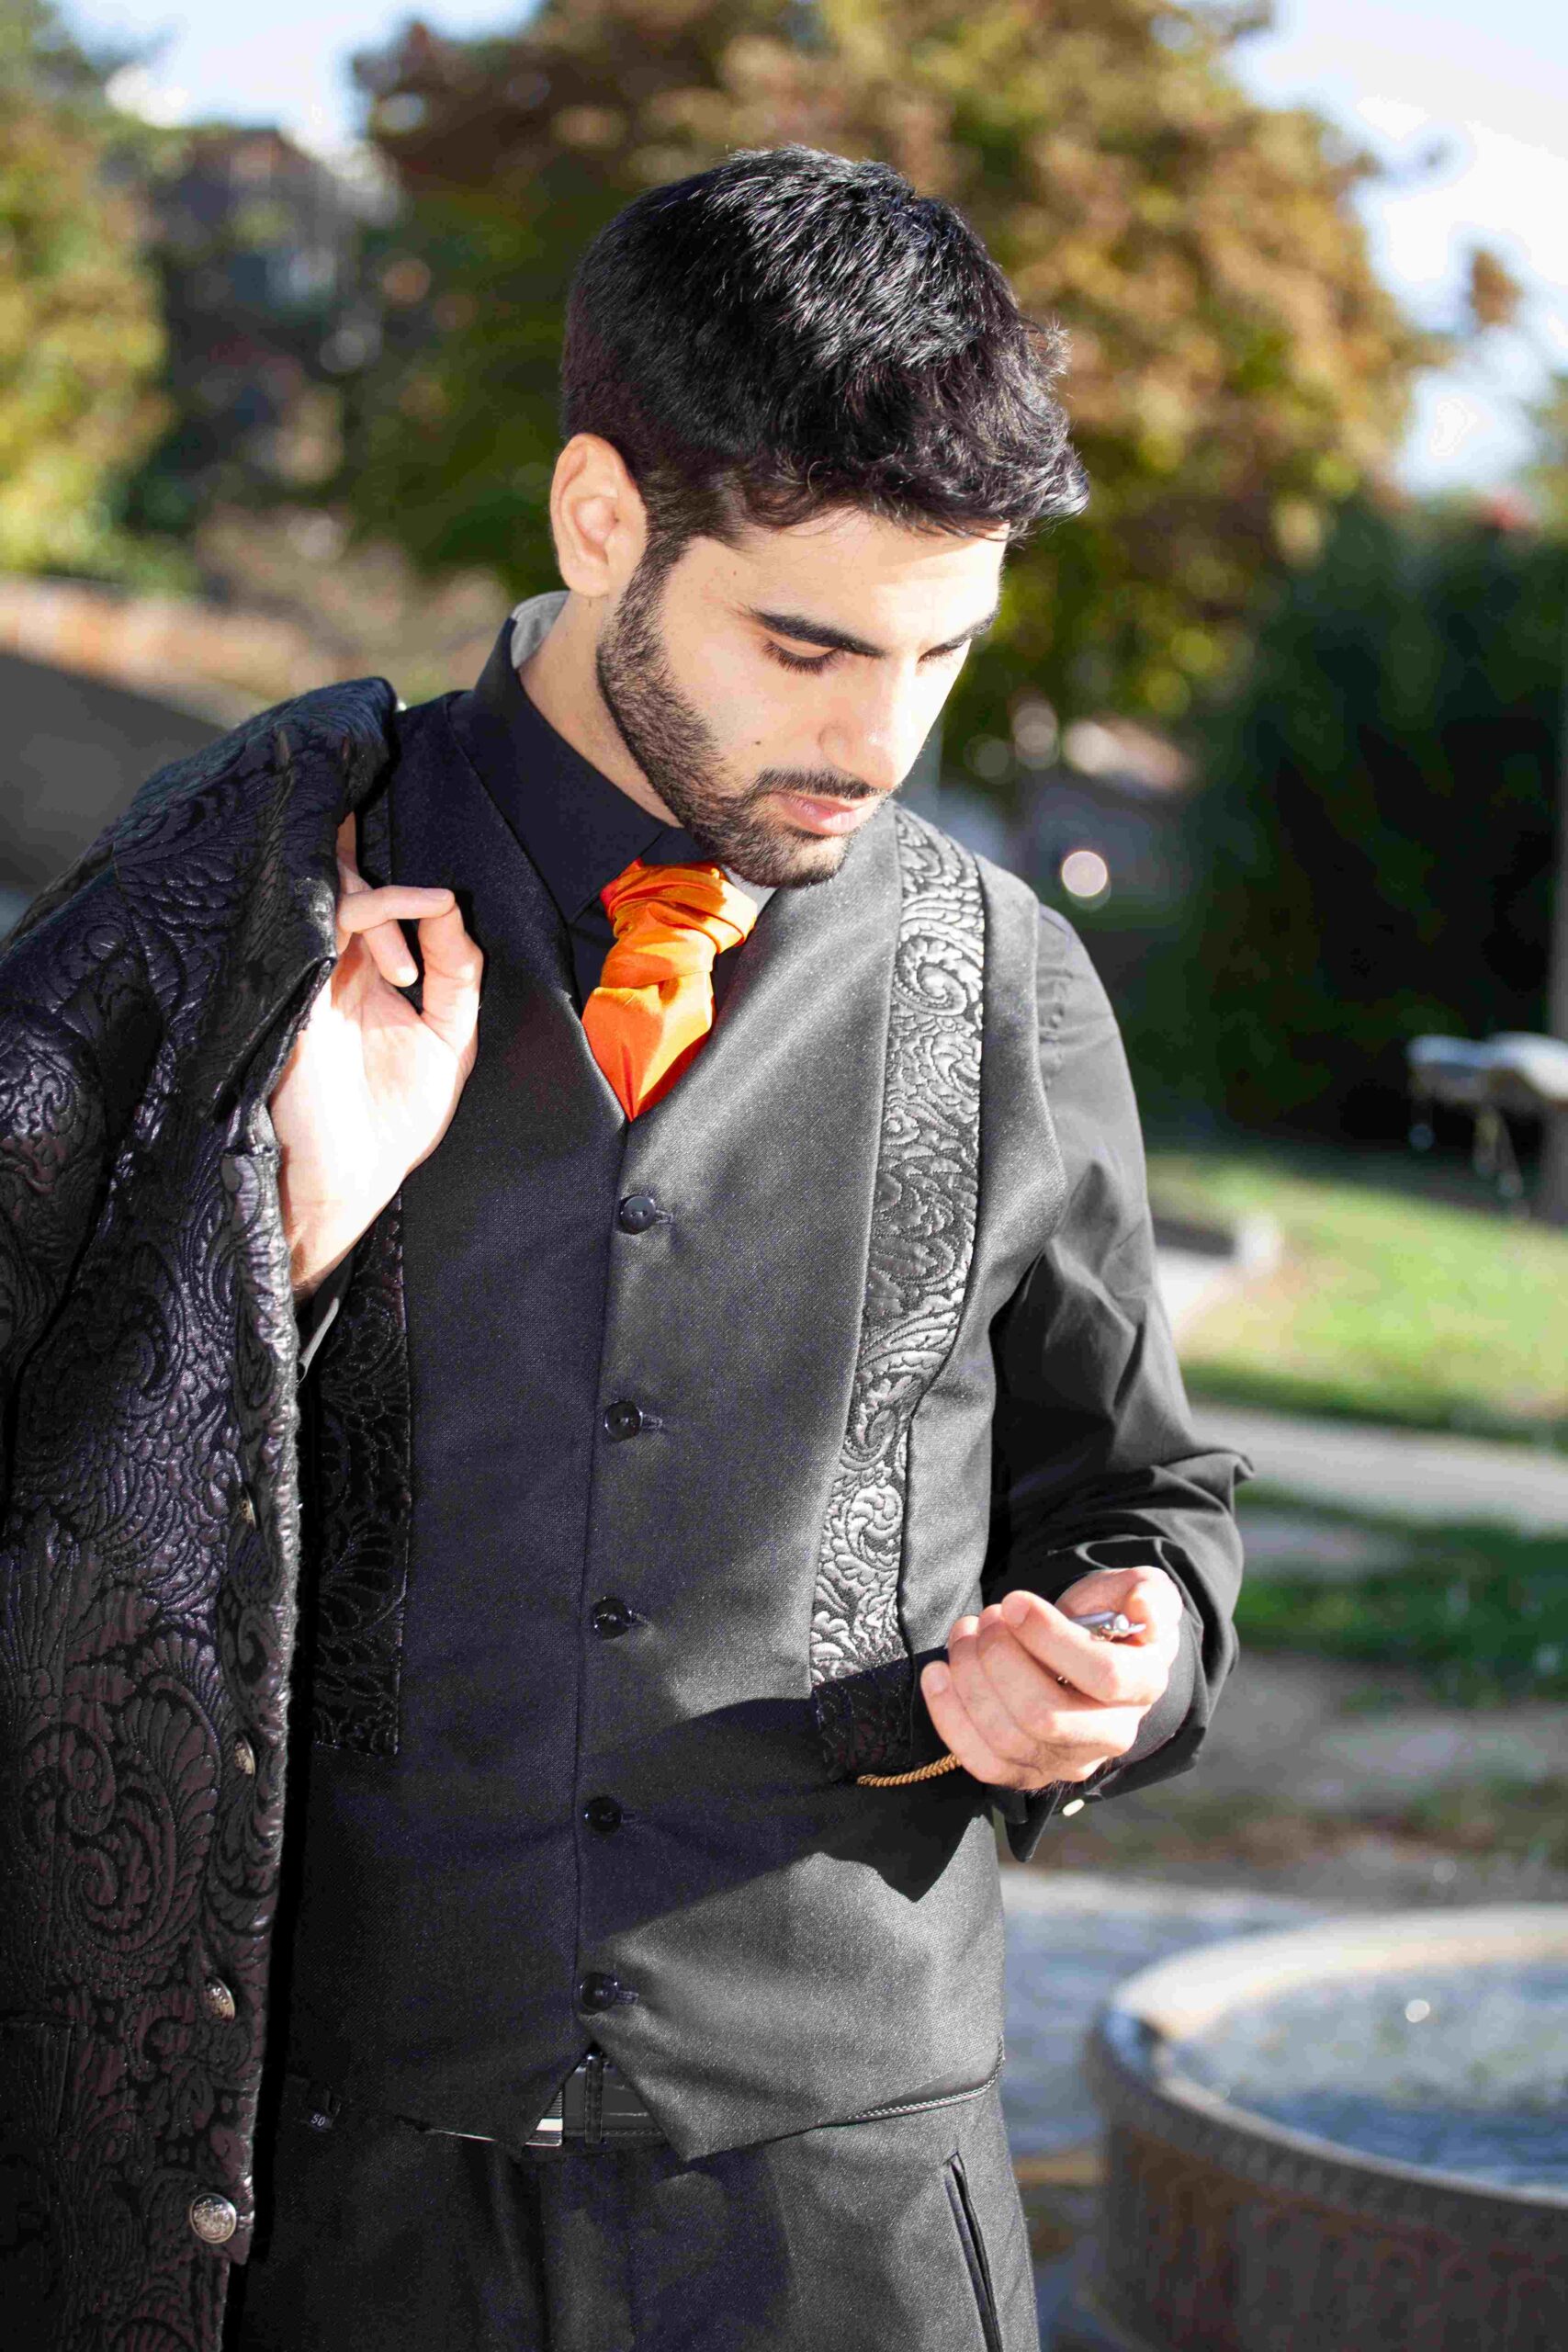 Costume Loyale costume de mariage grenoble couleur noir veste longue en jacquard lyonnais et lavallière orange